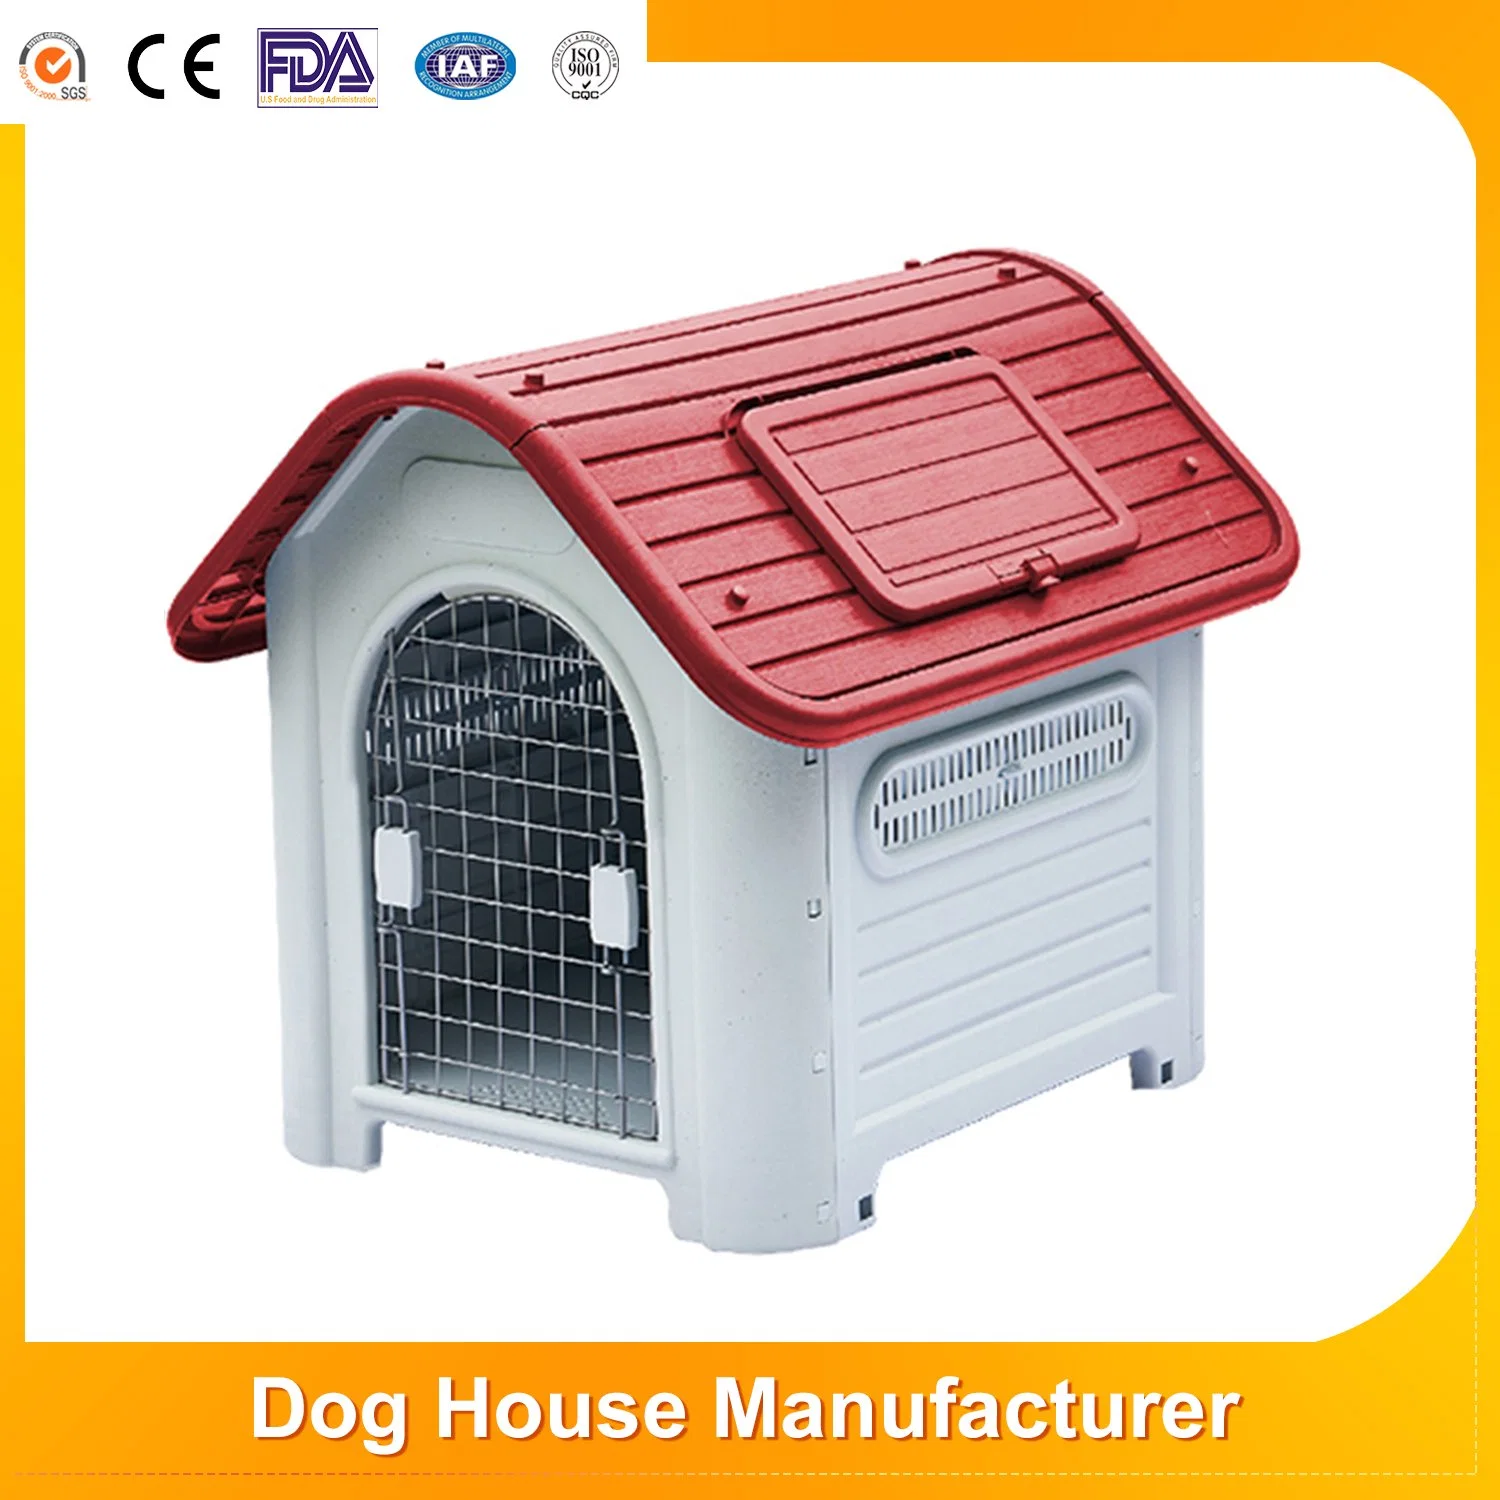 Venta caliente Ventilador impermeable Gran Perro plástico Kennel Refugio impermeable Y protector solar extraíble mascota Casa